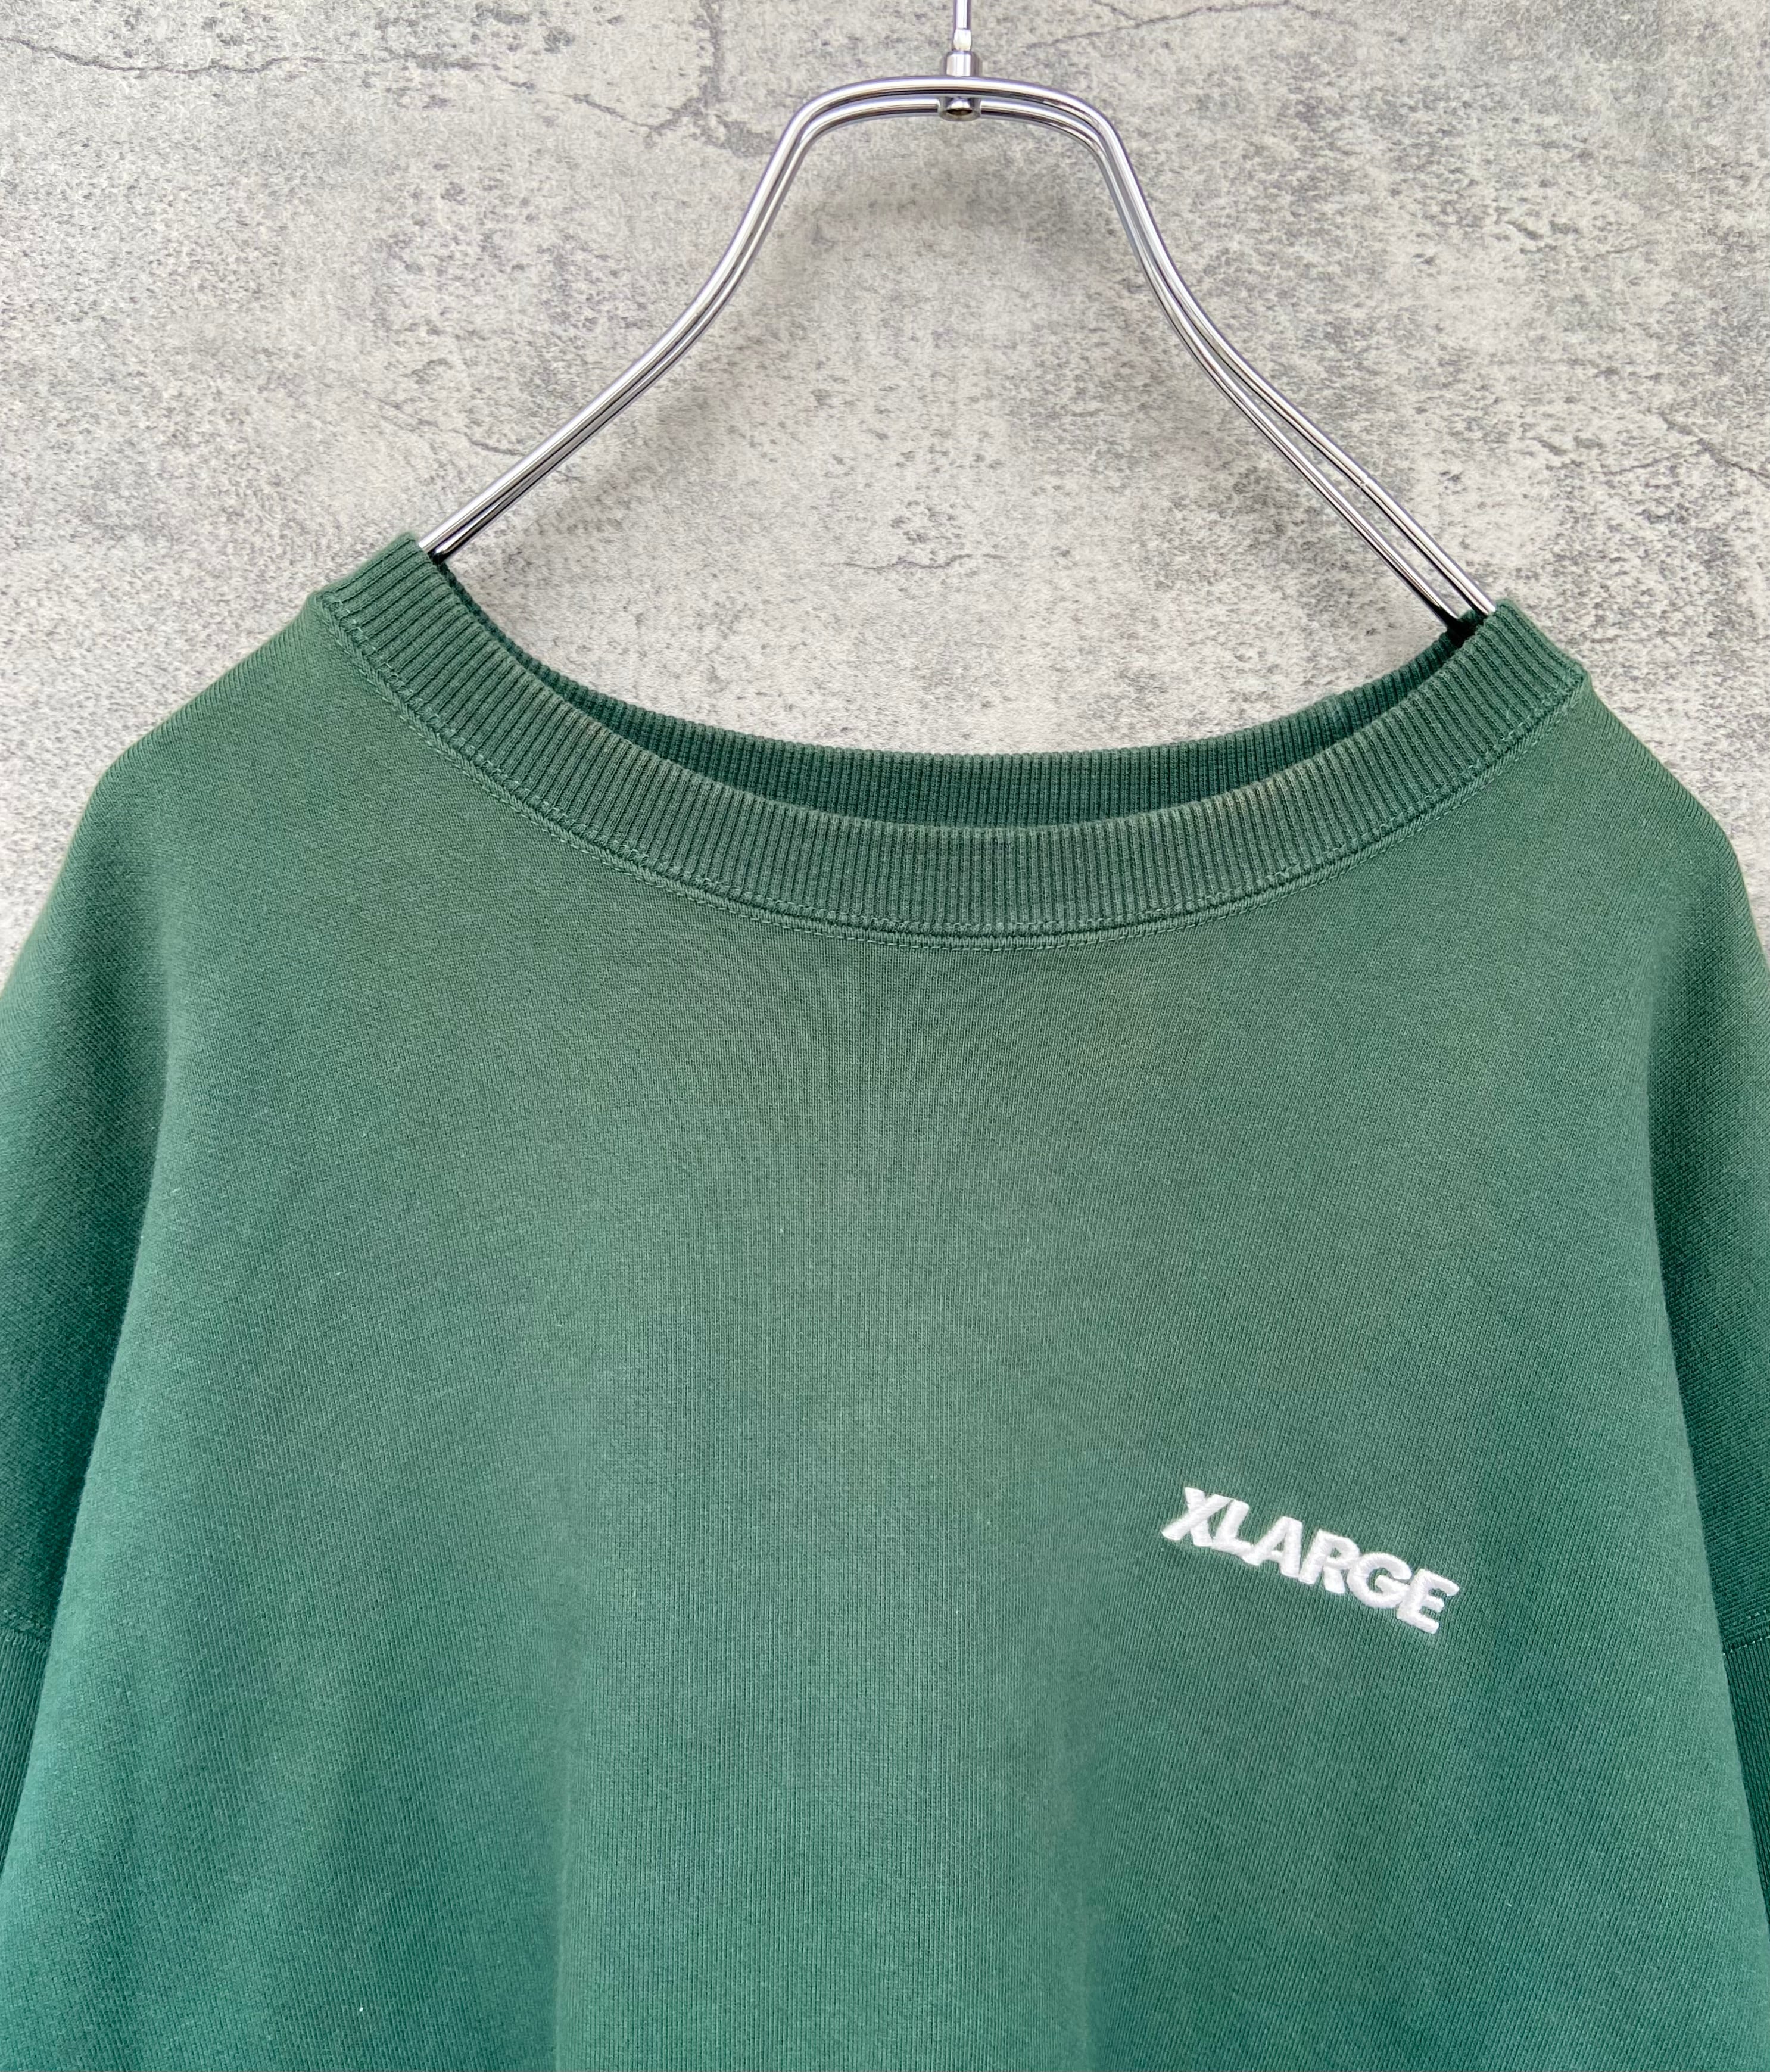 xlarge エクストララージ スウェット 緑 背面刺繍ロゴ オーバーサイズ